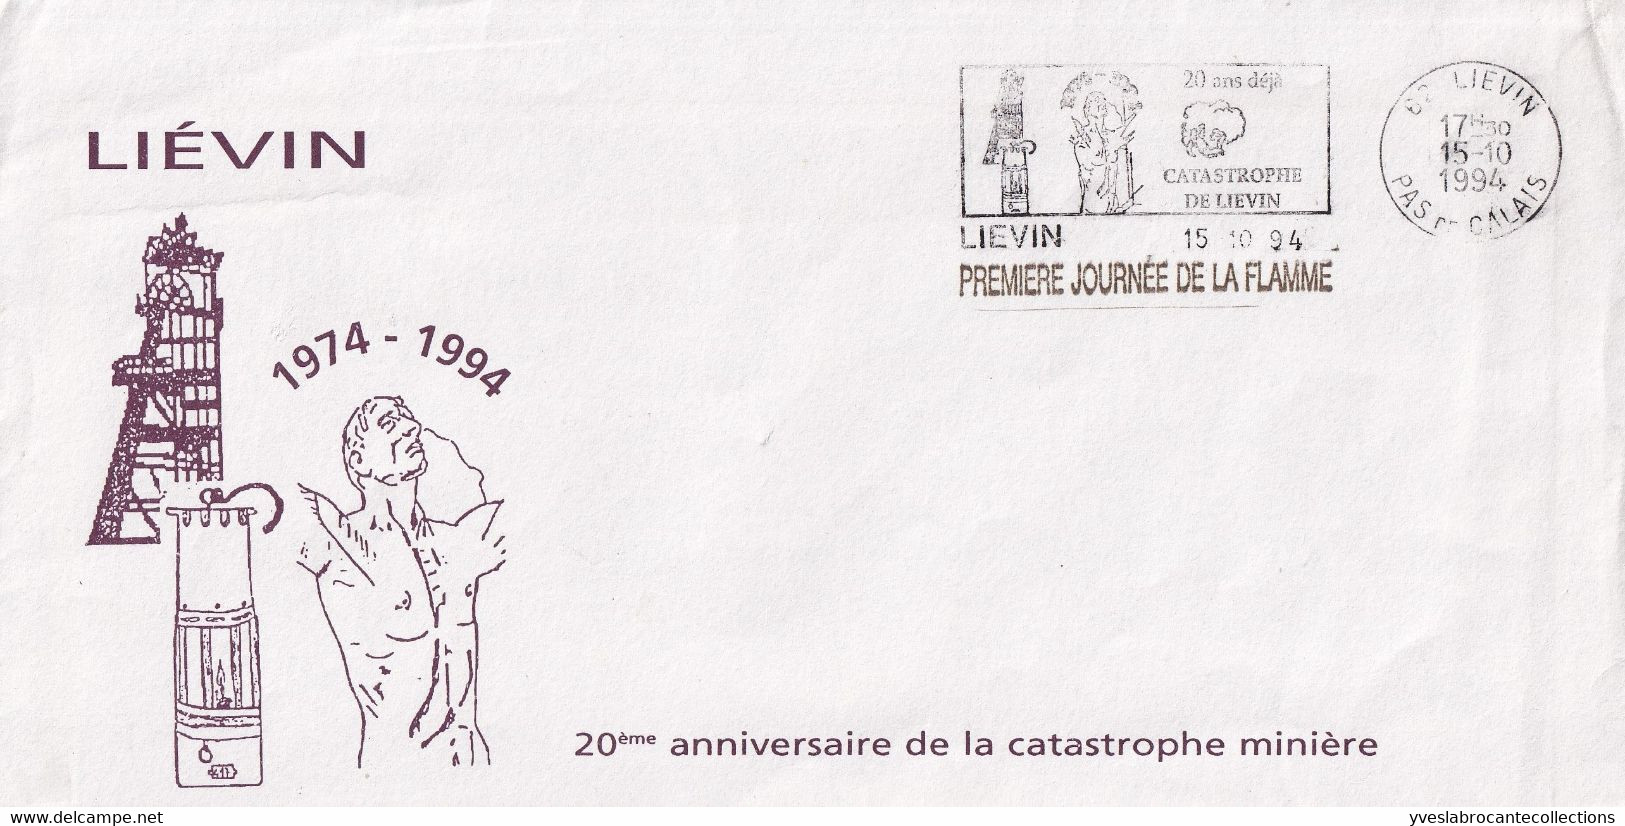 Liévin - 62 -  - Sur Enveloppe Commémorative Catastrophe Minière 1974 -  1ère Journée Flamme 20 Ans Déjà ... -15/10/94 - Maschinenstempel (Werbestempel)